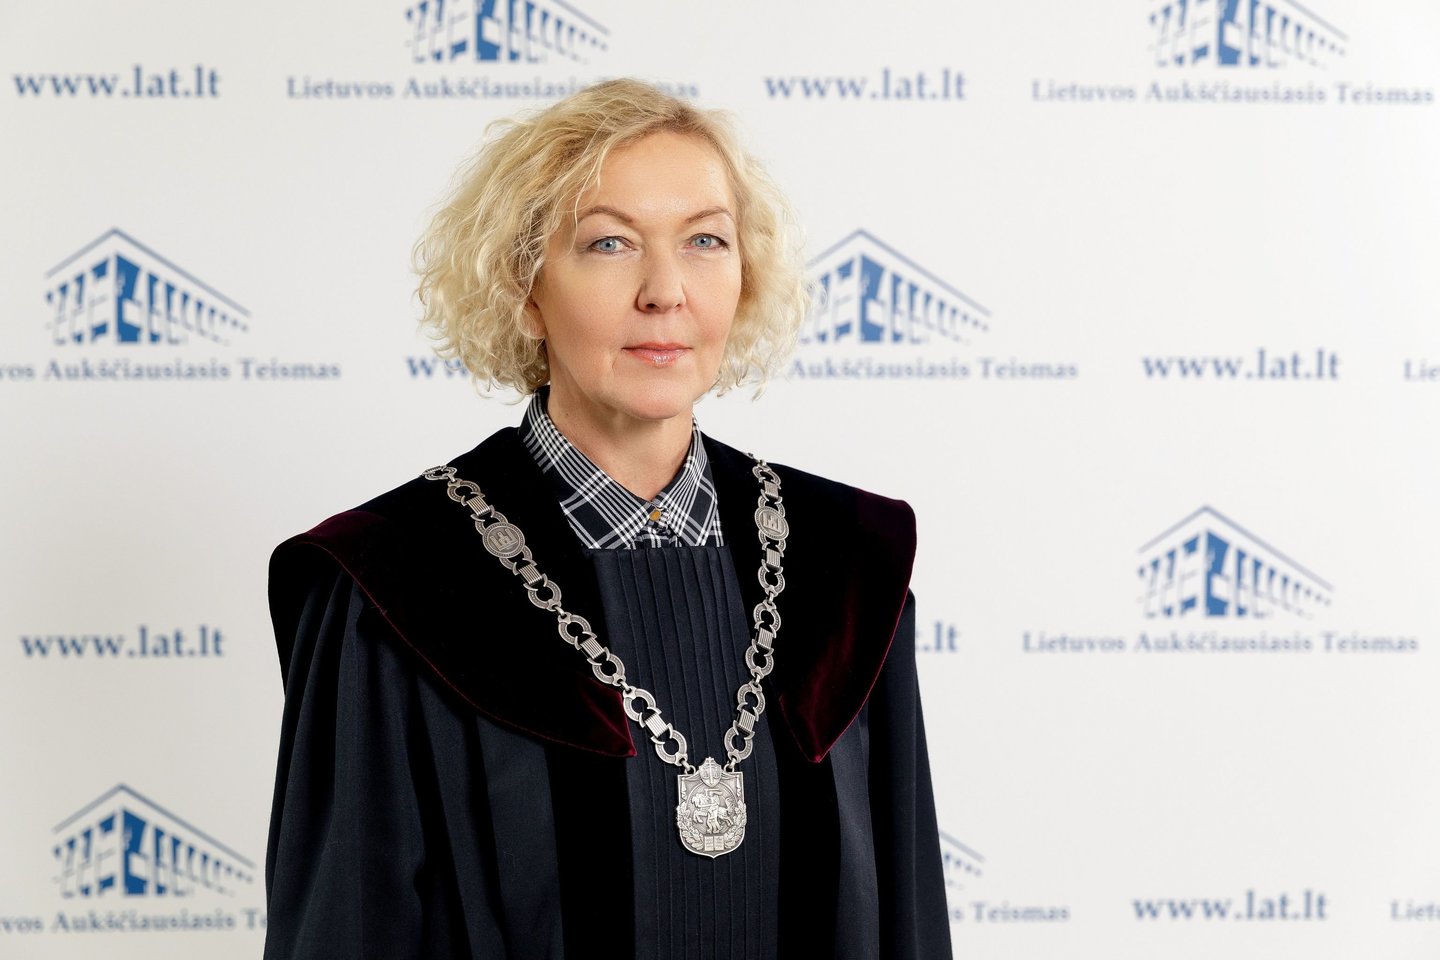 Teisėjų tarybos pirmininkė S.Rudėnaitė apgailestavo, jog dalis teisėjų jau prarado viltį, kad teismų sistemoje kas nors gali keistis.<br> D.Stankaus nuotr.